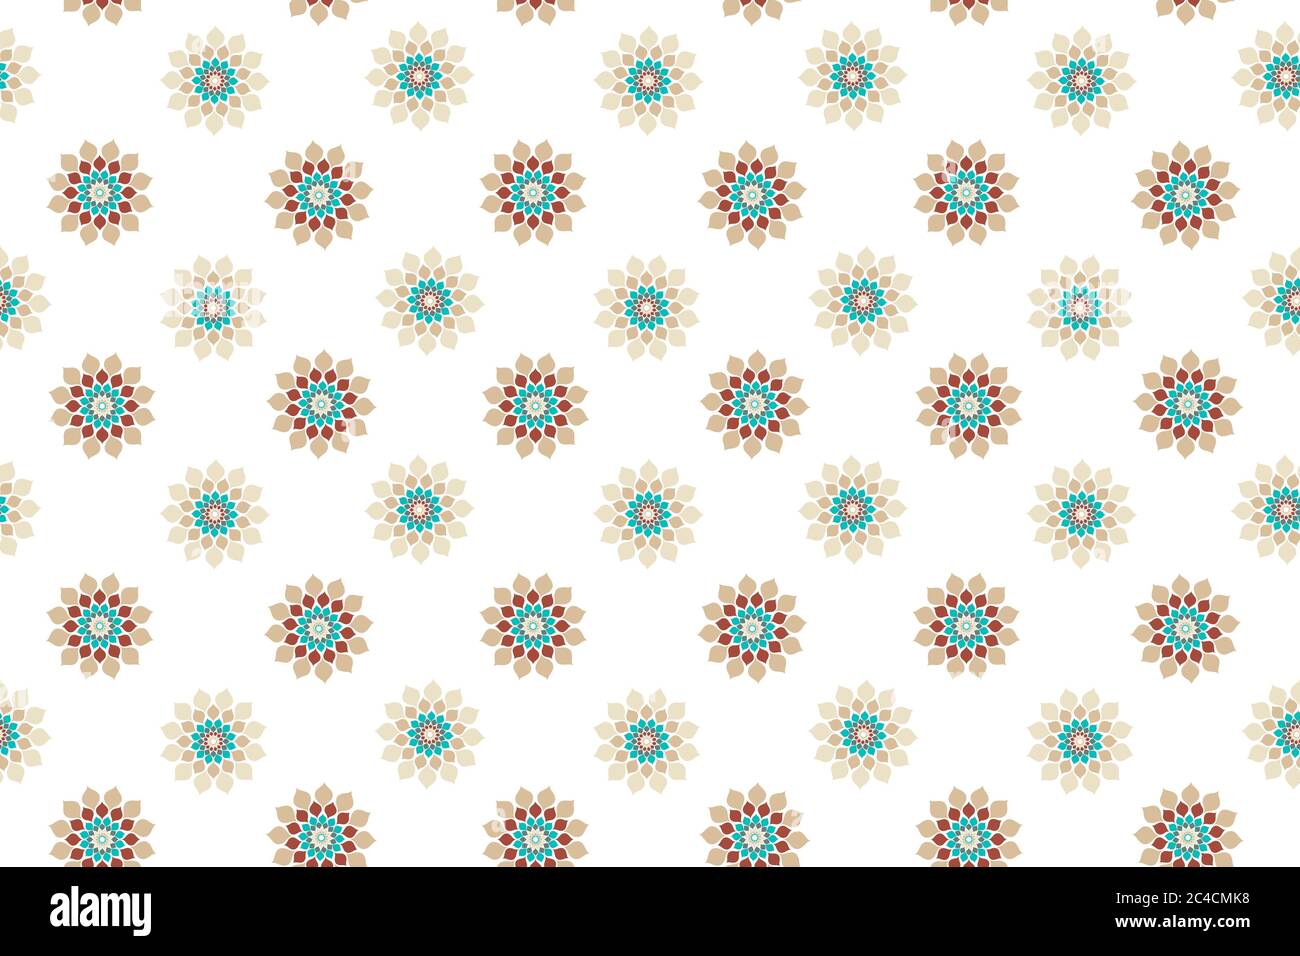 Florales nahtloses Vektormuster. Islamisches nahtloses Mosaik. Blau beige rote Dekoration. Grafische Illustration Textur Stock Vektor